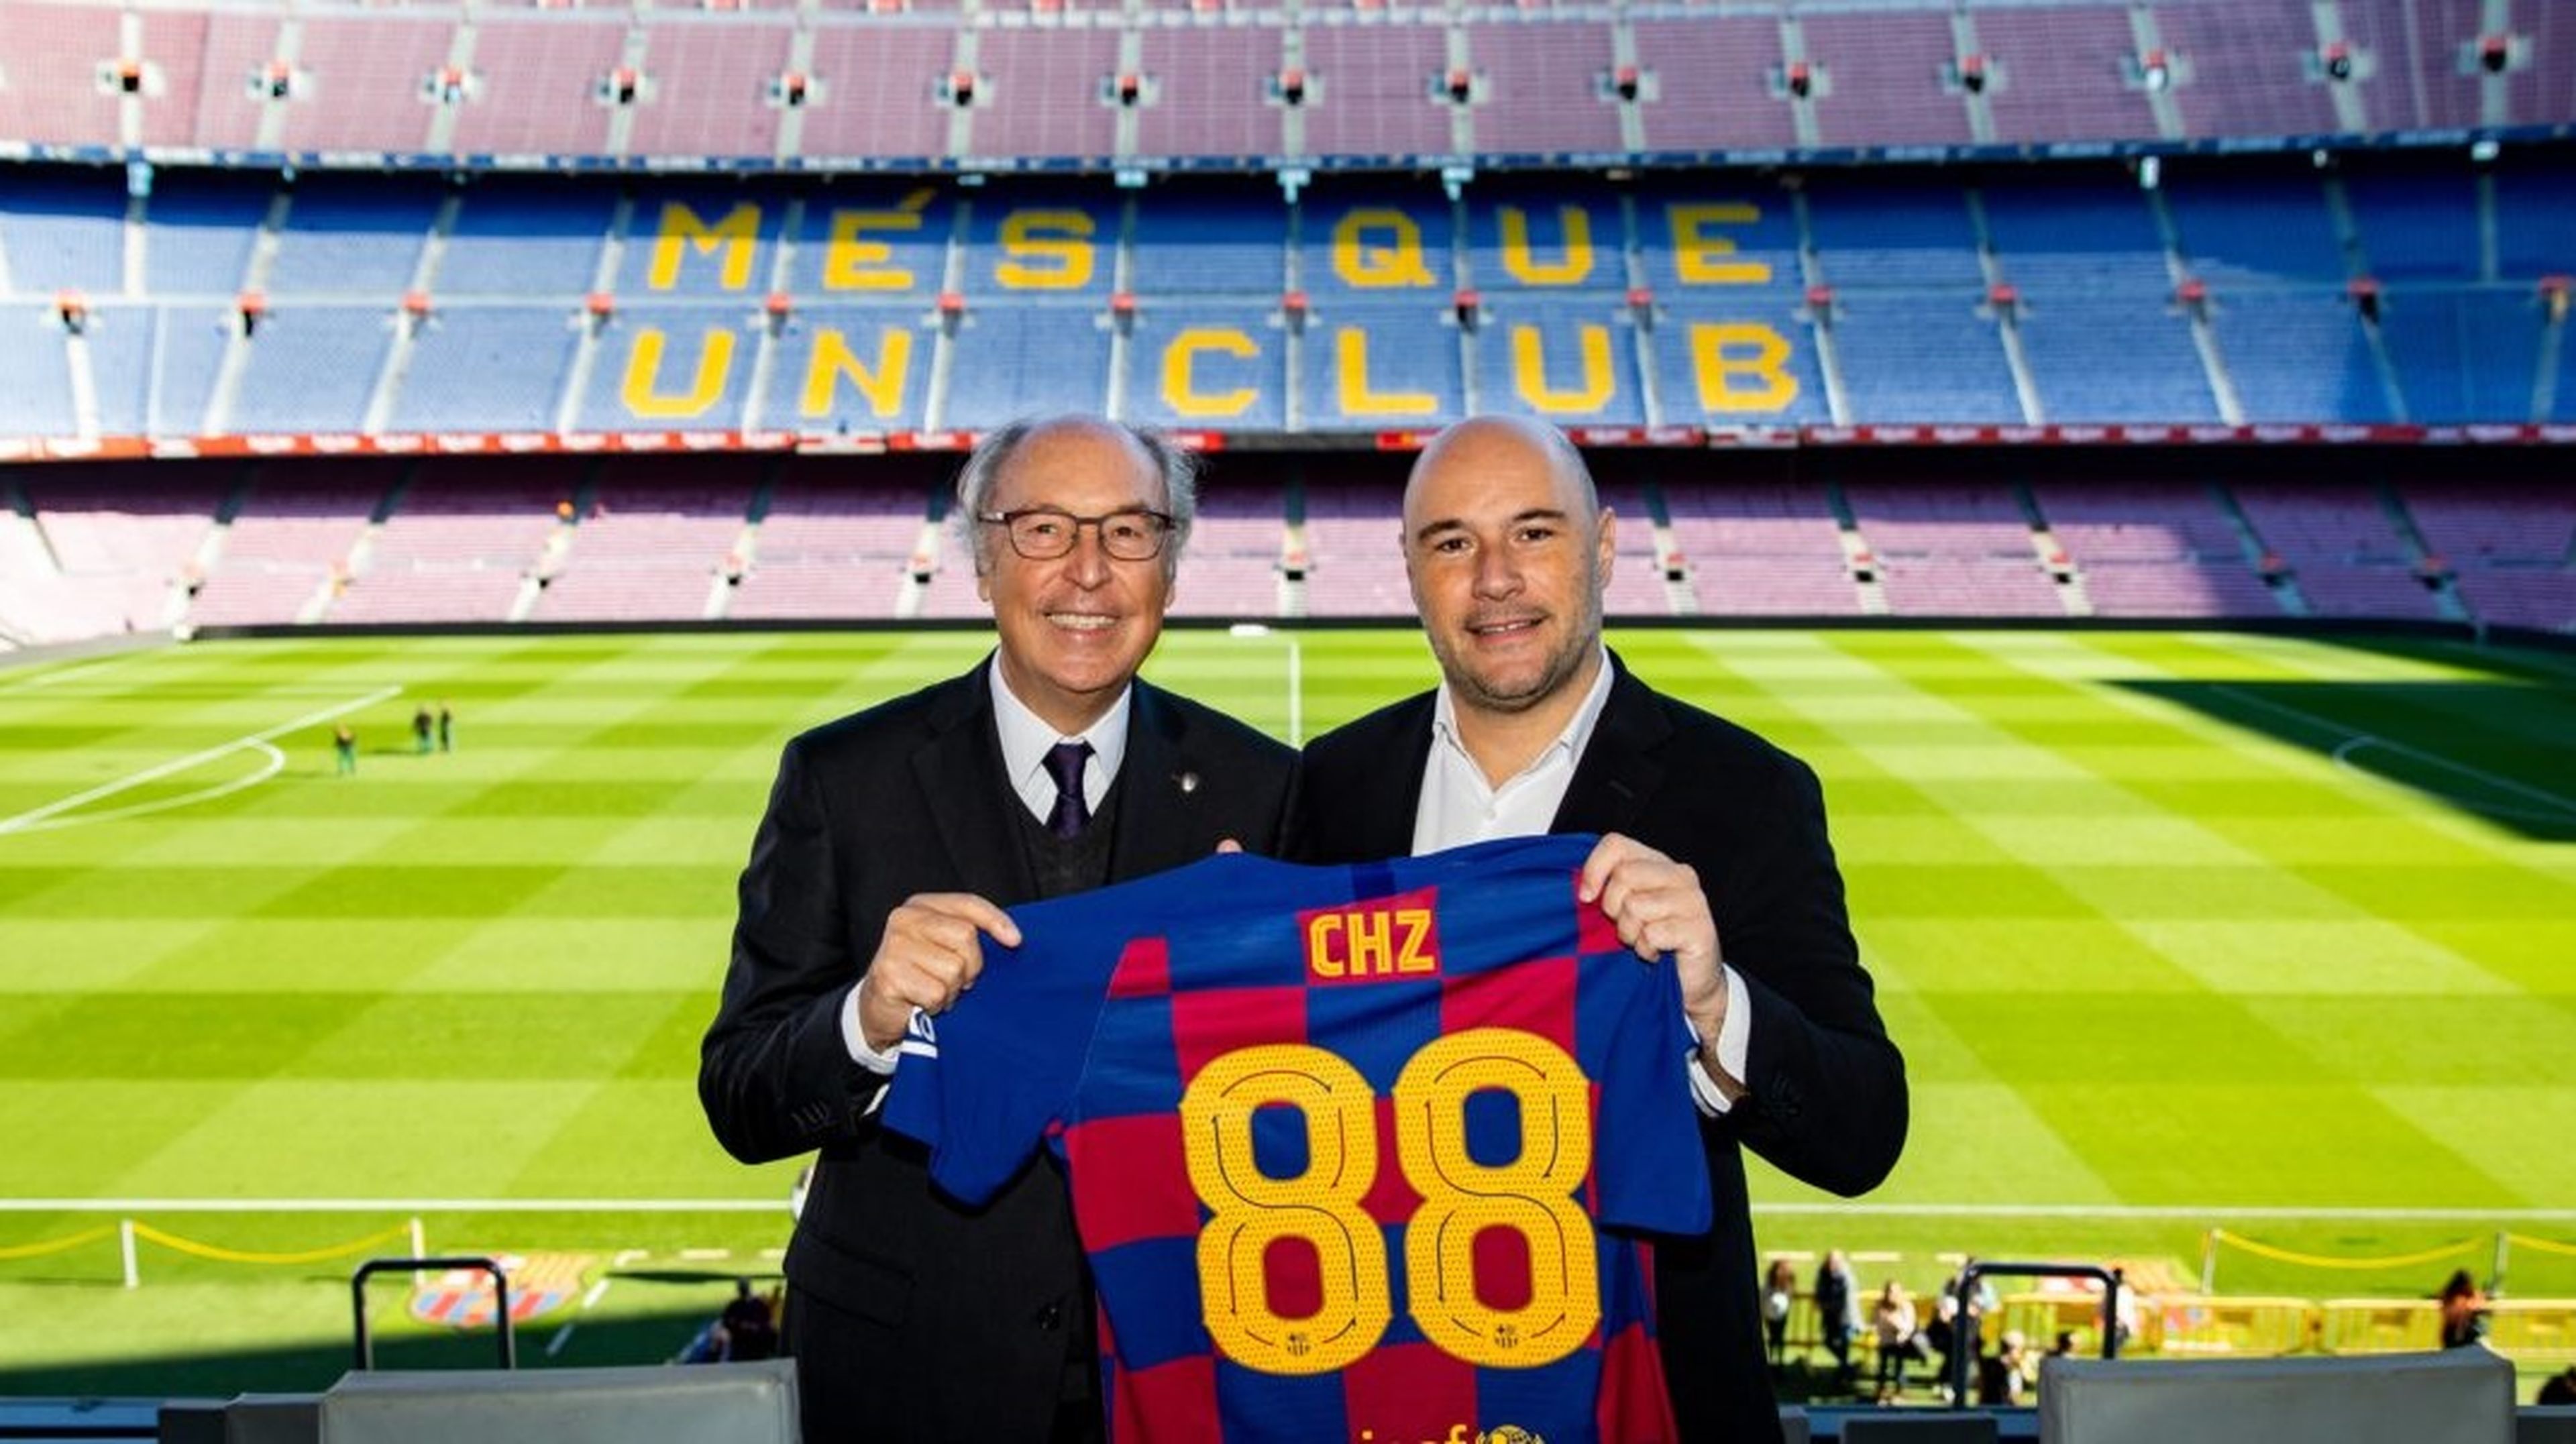 El directivo responsable del Área Comercial del FC Barcelona. Josep Pont, posa junto al CEO y Fundador de Chiliz, Alexandre Dreyfus.